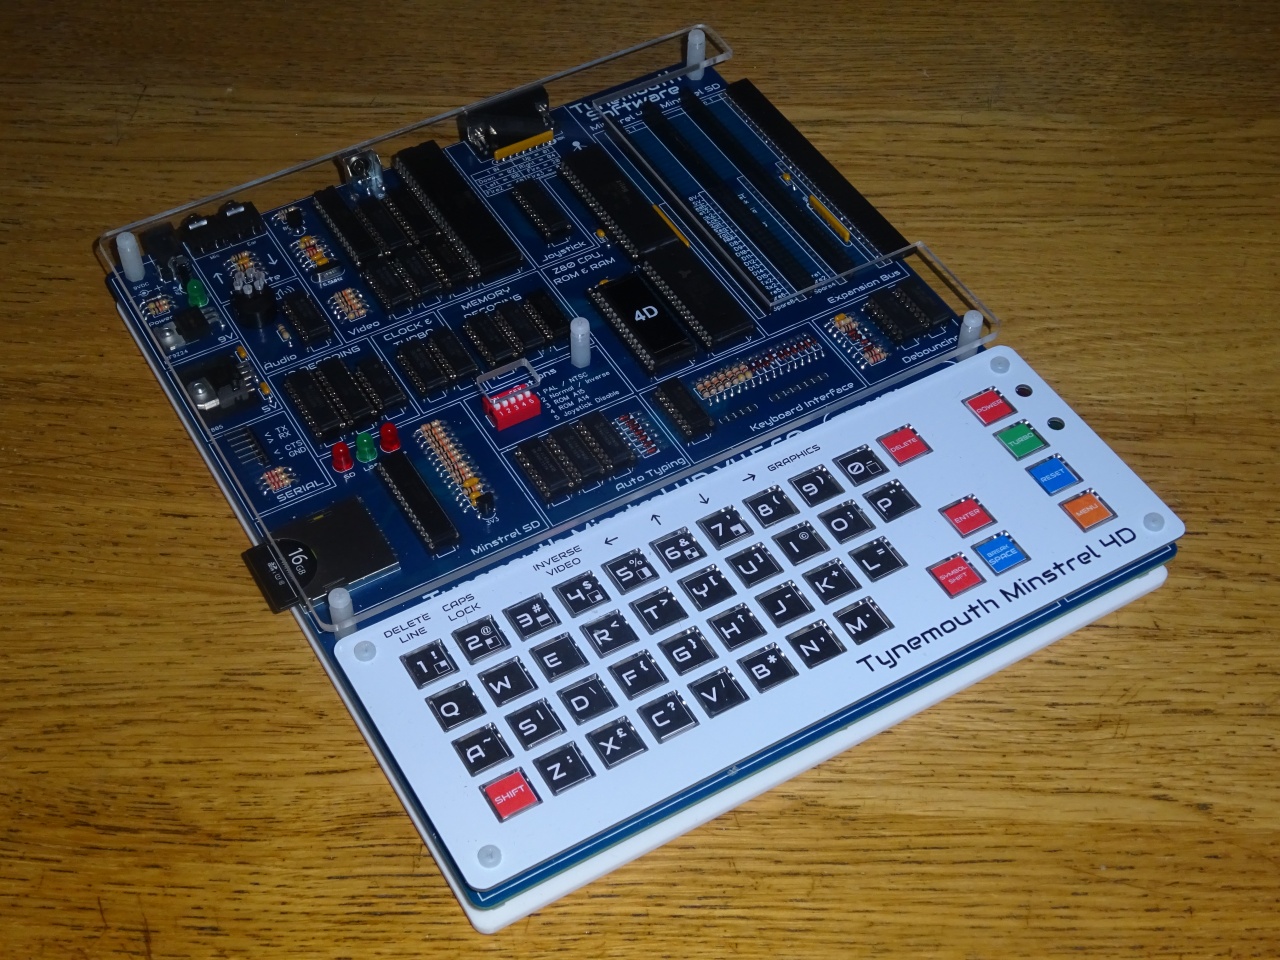 Minstrel 4D (Turbo) - Jupiter Ace compatible computer kit